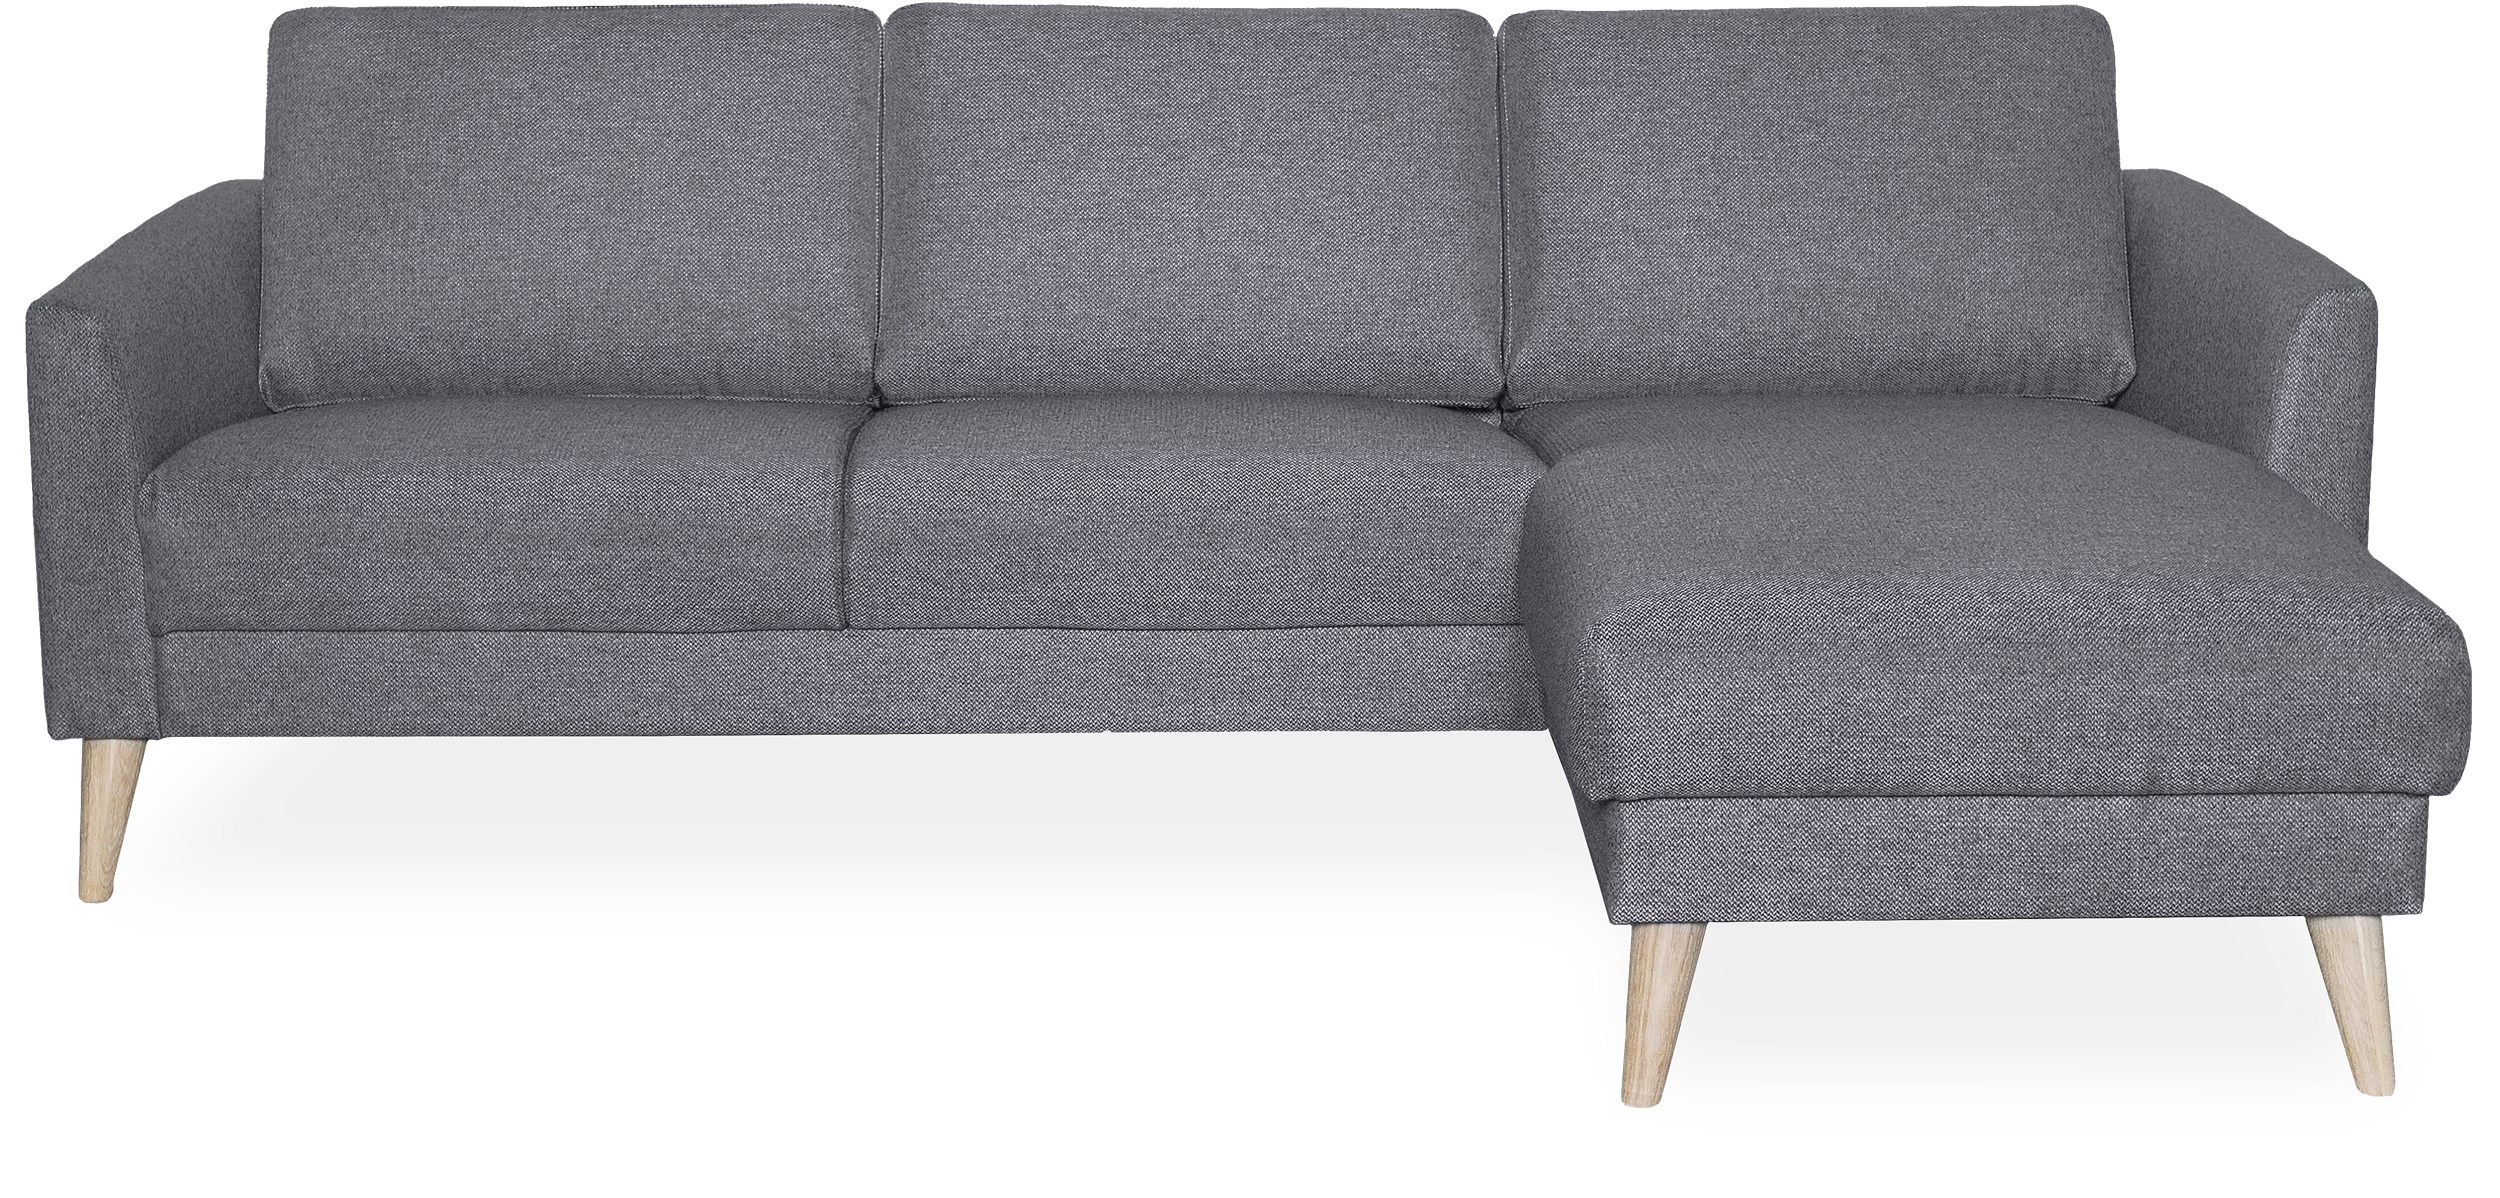 Lotus högervänd soffa med schäslong - Golf Grey textil och ben i vitoljad ek